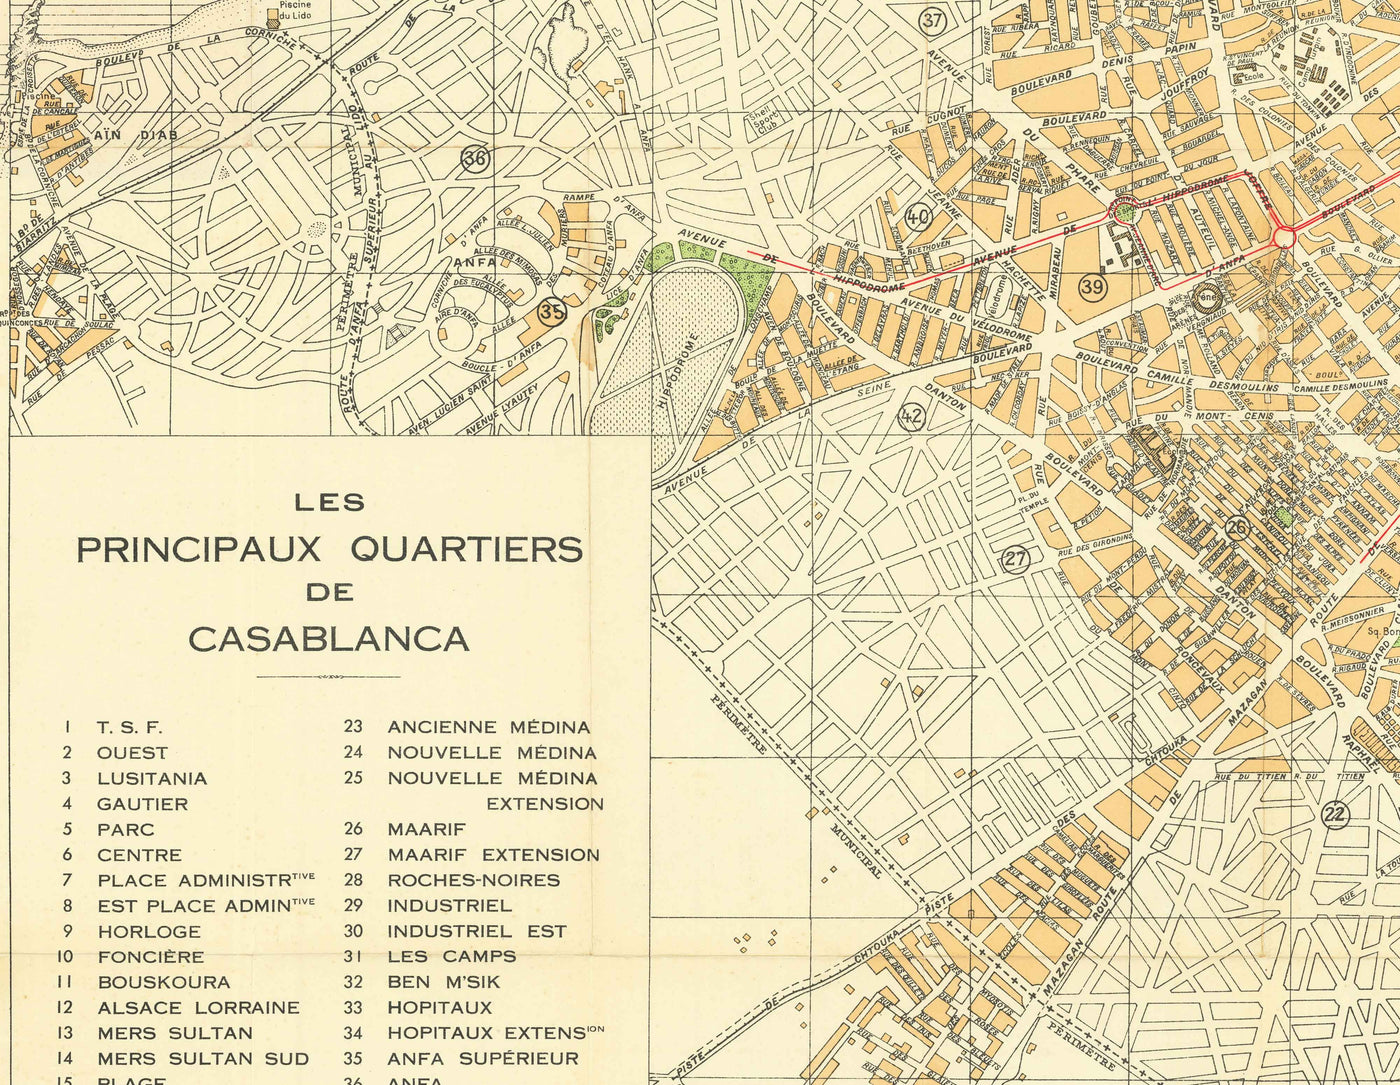 Alte Karte von Casablanca im Jahr 1934 von Gaillac-Monrocq - Alte Medina, Hafen von Casablanca, Derb Ghallef, Neue Medina, Hippodrom, Anfa